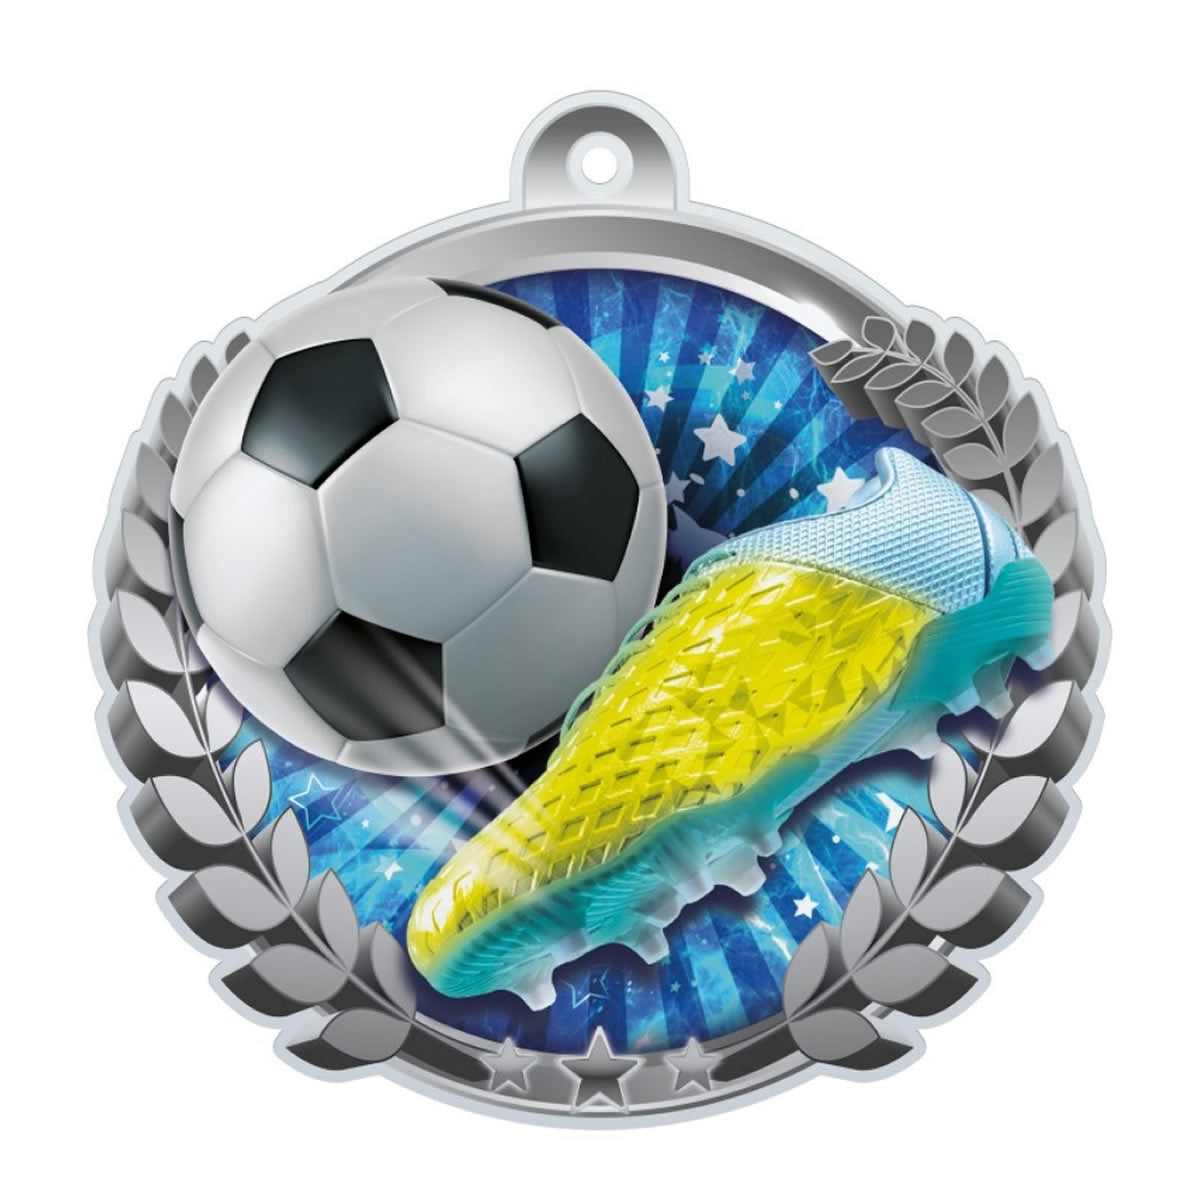 Boot and Ball Football Medal Acrylic